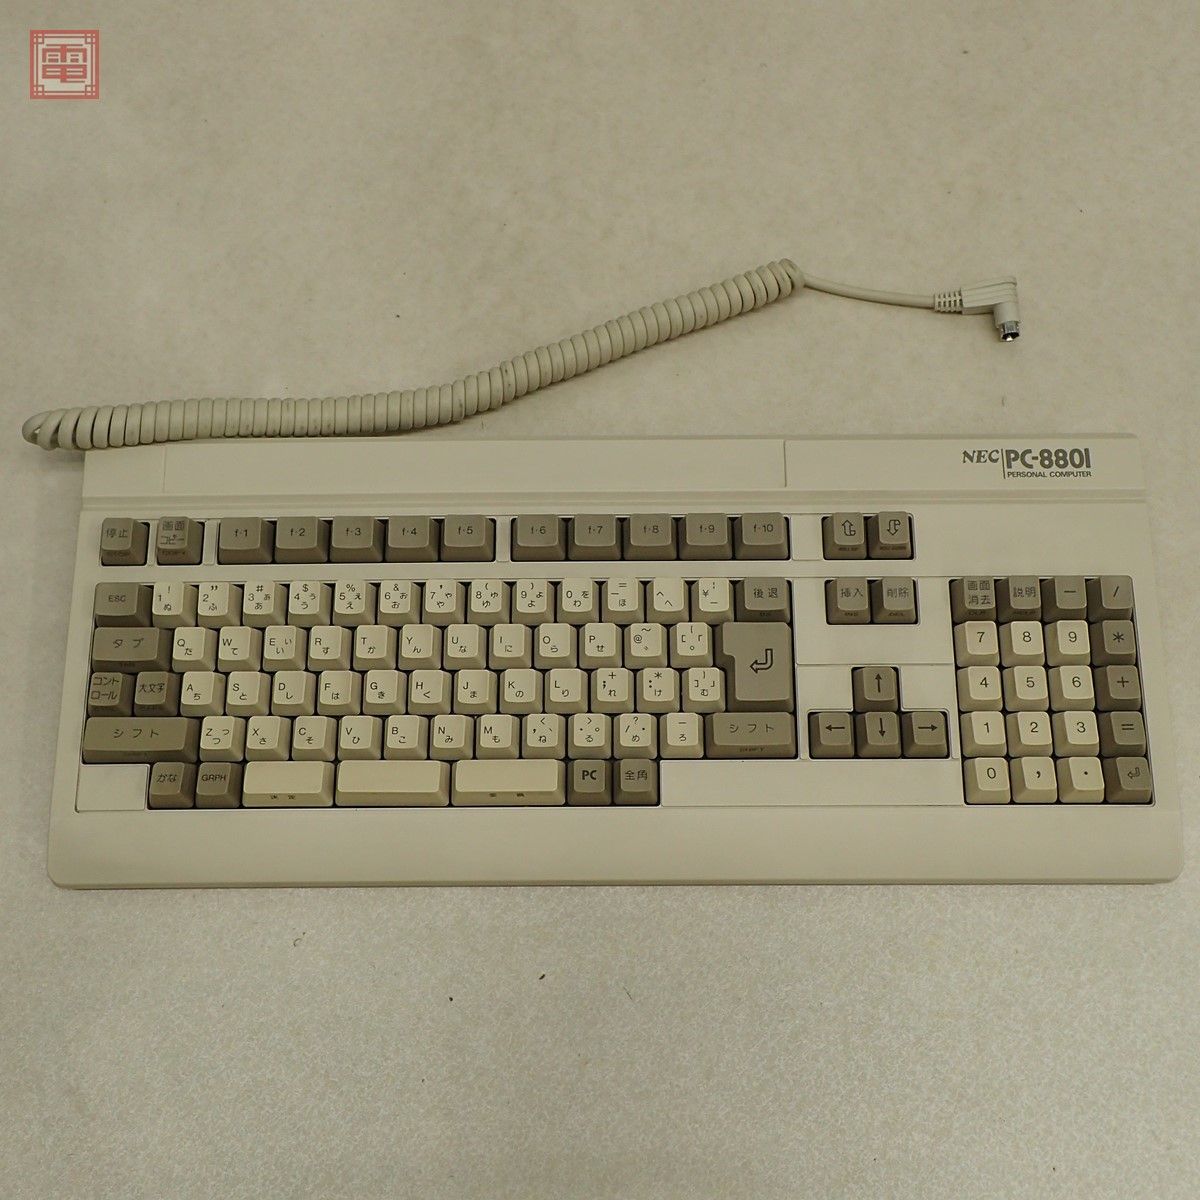 ヤフオク! -「pc-8801 keyboard」の落札相場・落札価格